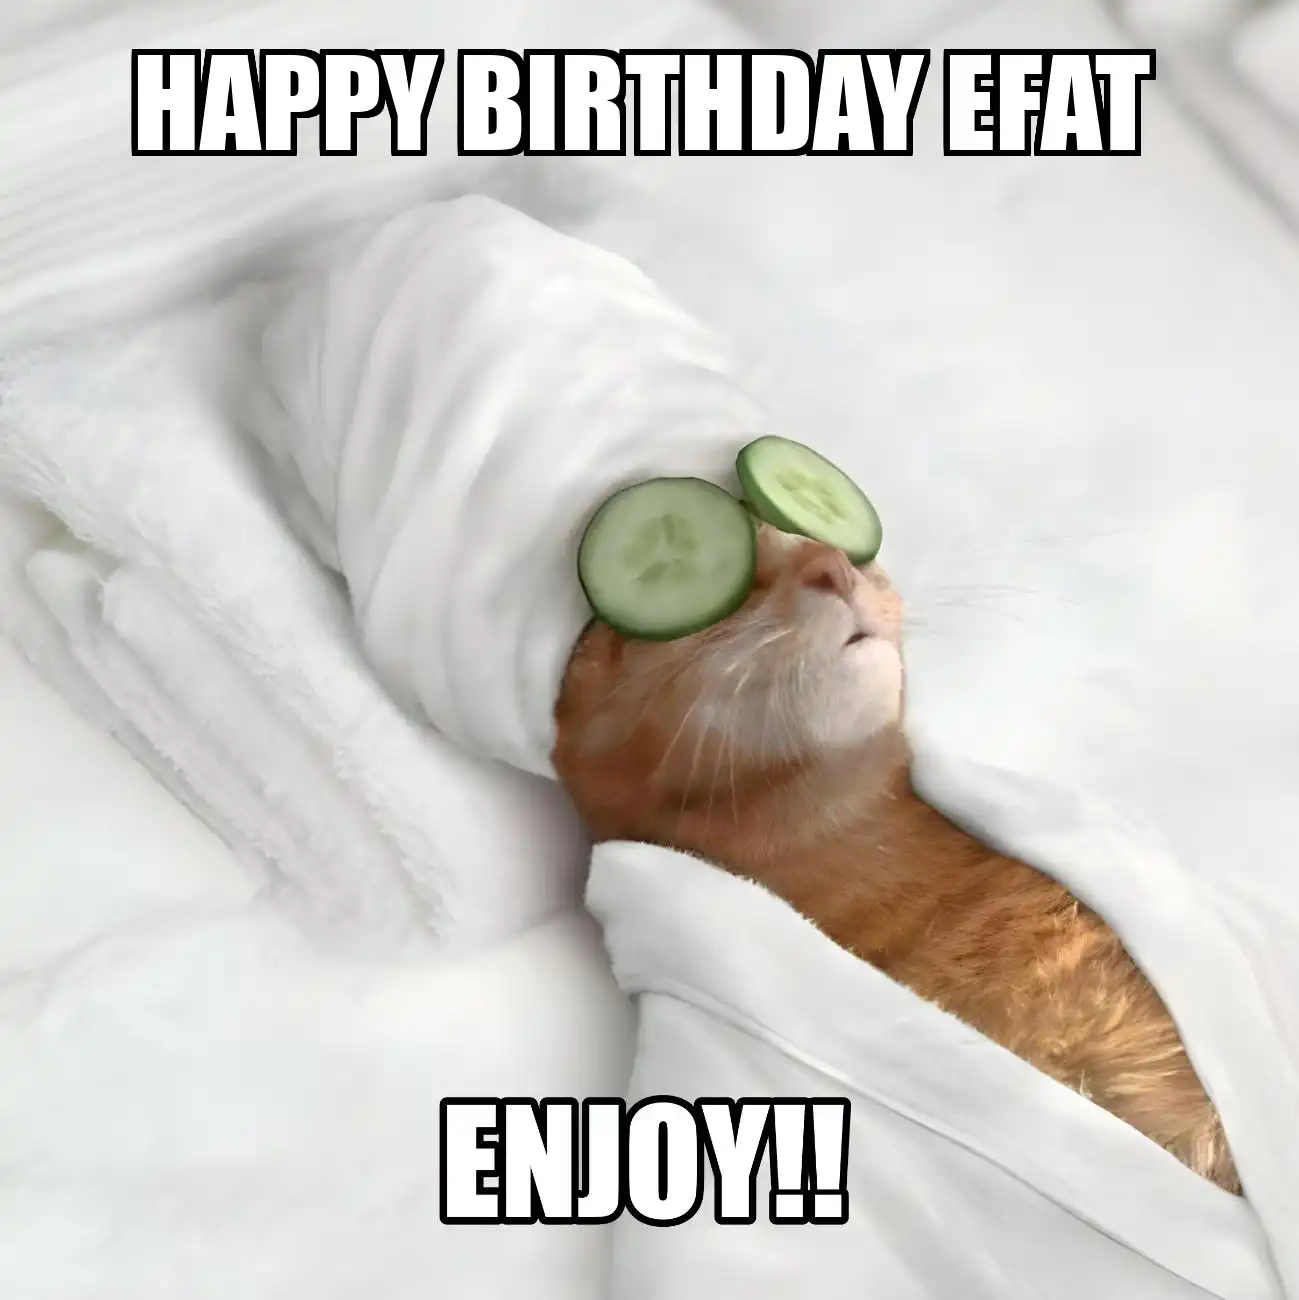 Happy Birthday Efat Enjoy Cat Meme